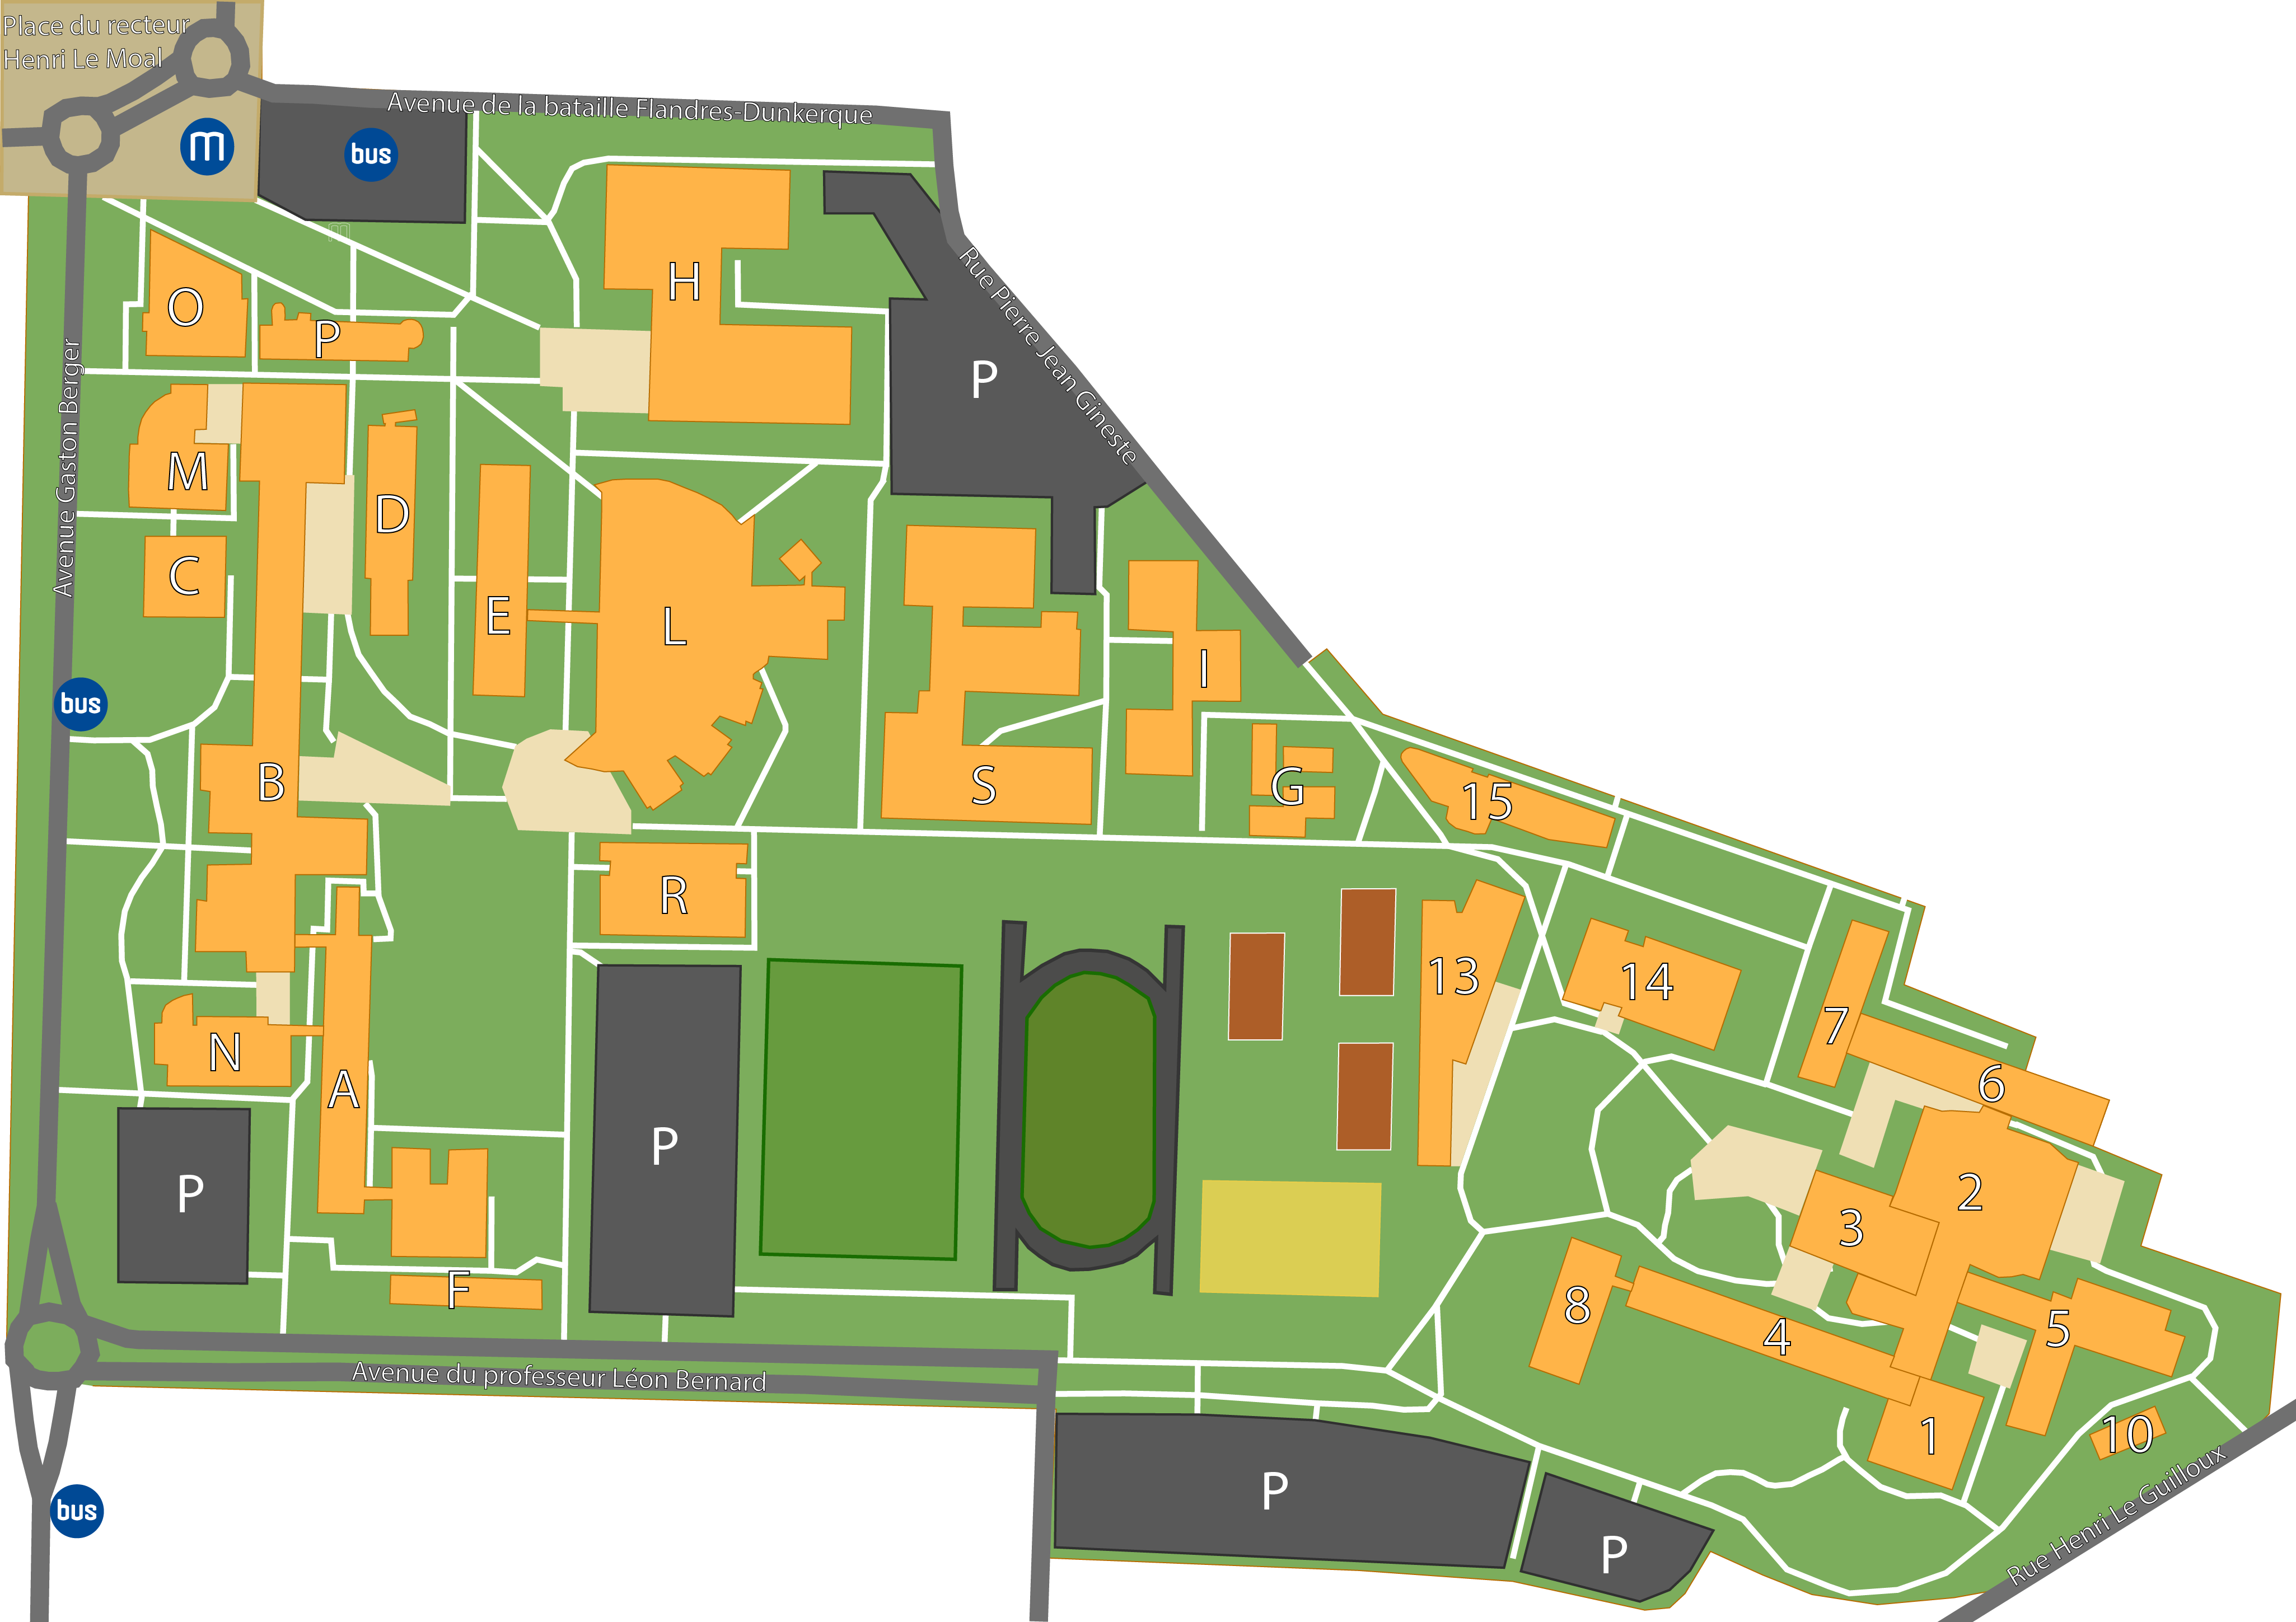 Plan campus